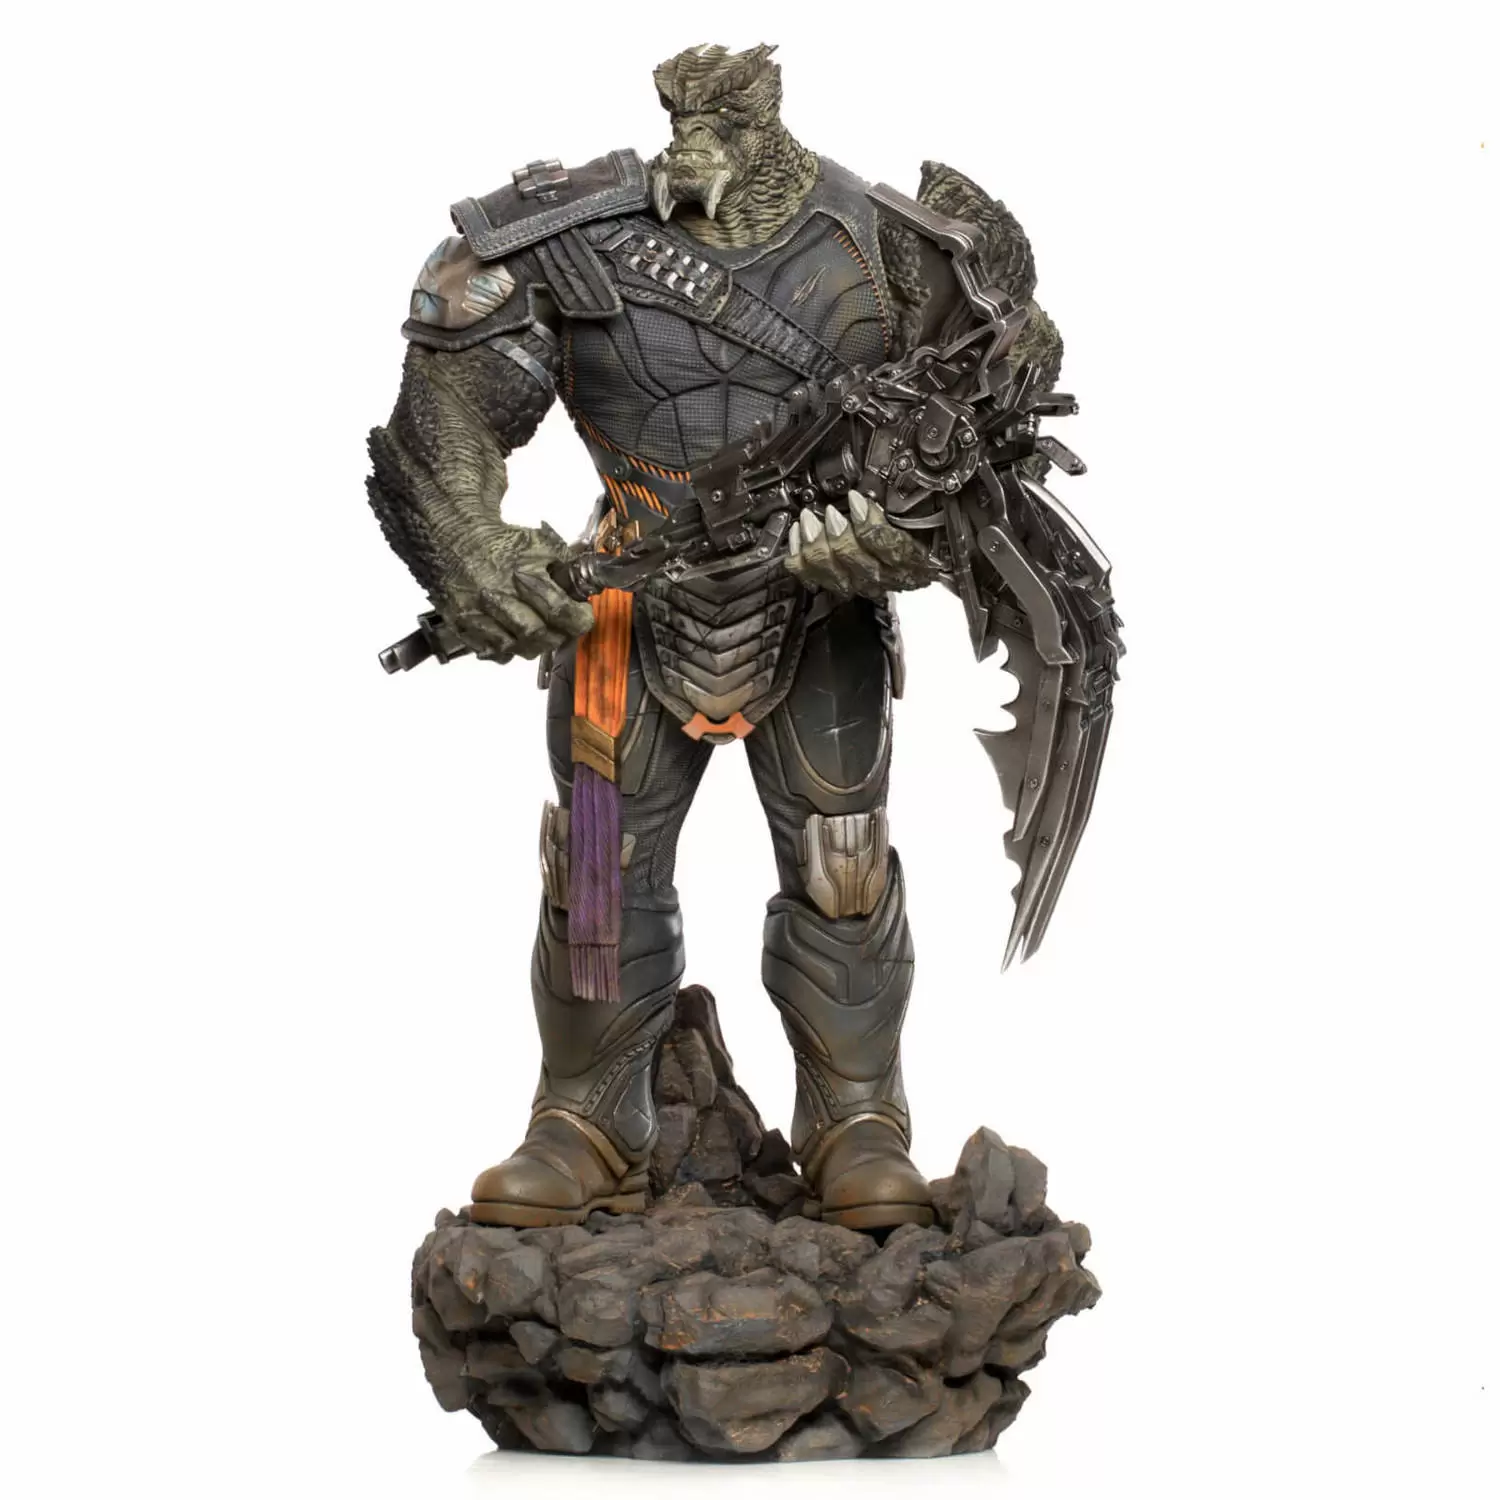 Iron Studios - Avengers: Endgame - Cull Obsidian Black Order - BDS Art Scale